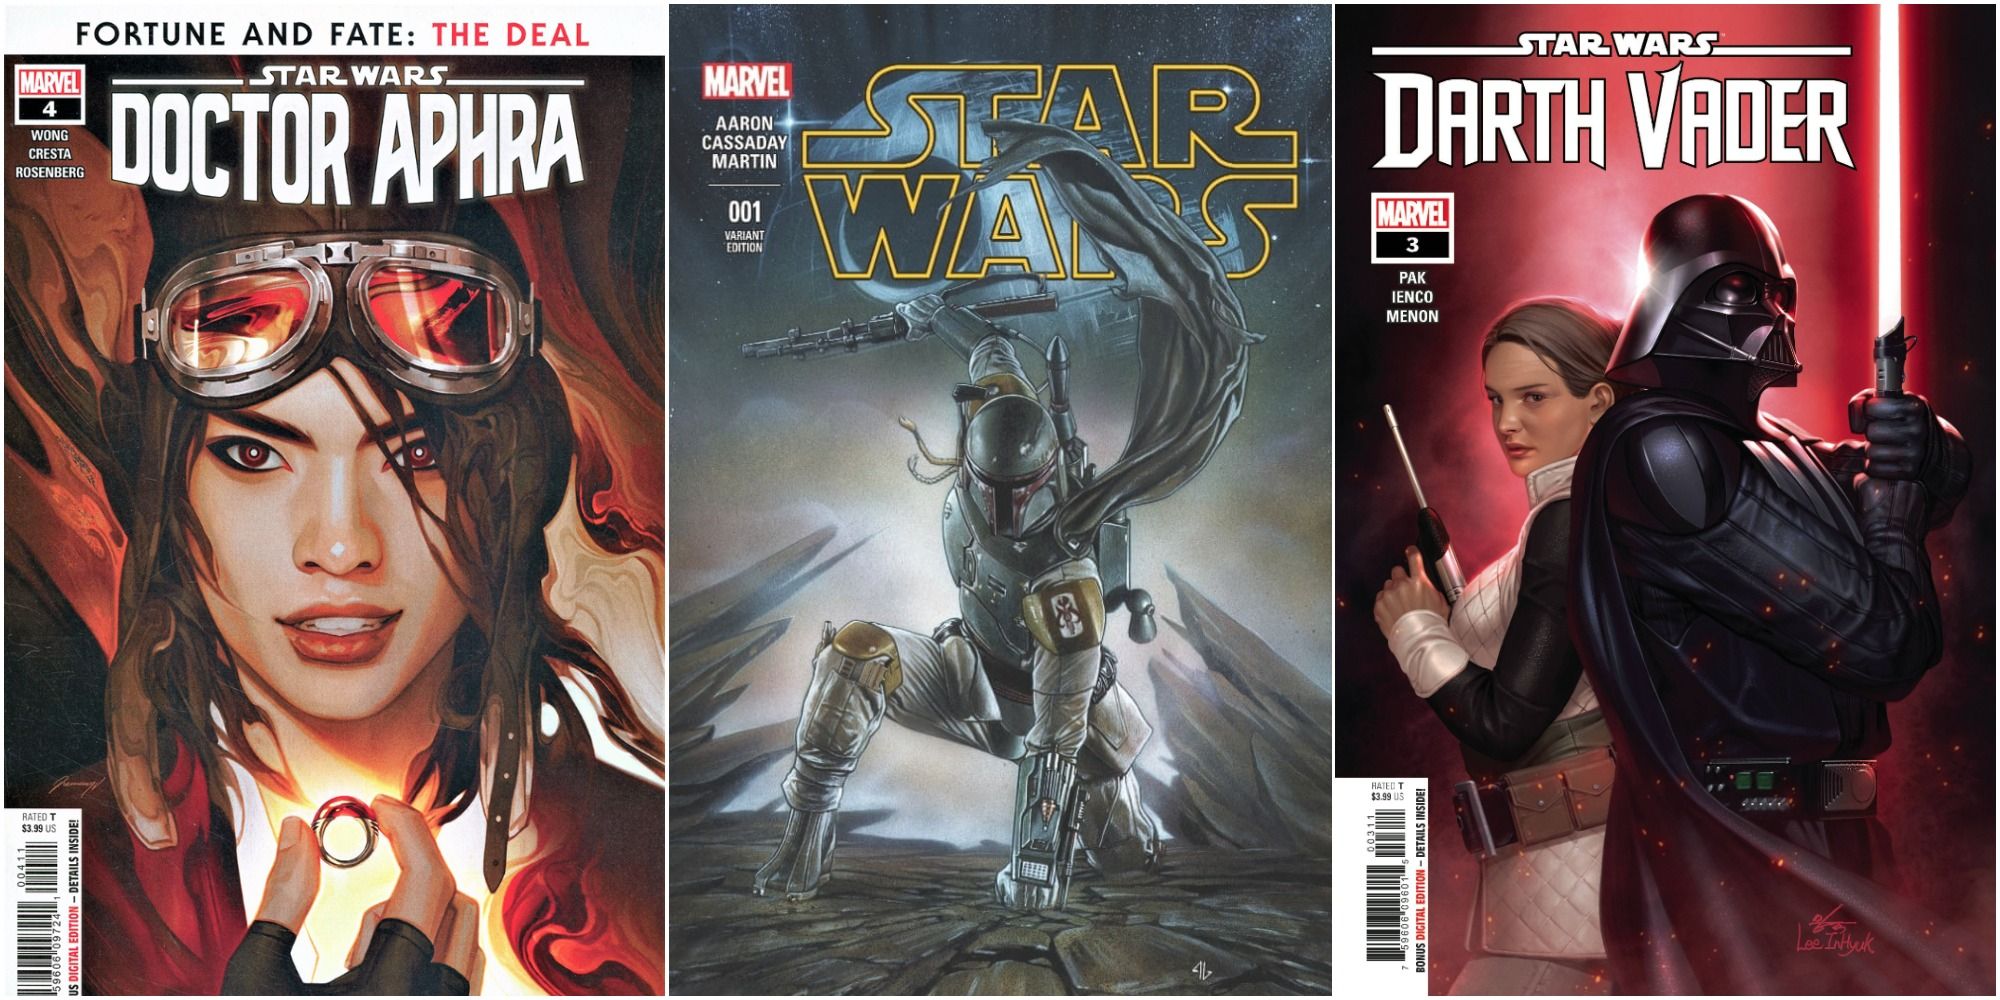 Star Wars Marvel Comic Covers Doctor Aphra #4 Aphra Close Up Star Wars Boba Fett Variant Cover Darth Vader #3 Vader & Sabé